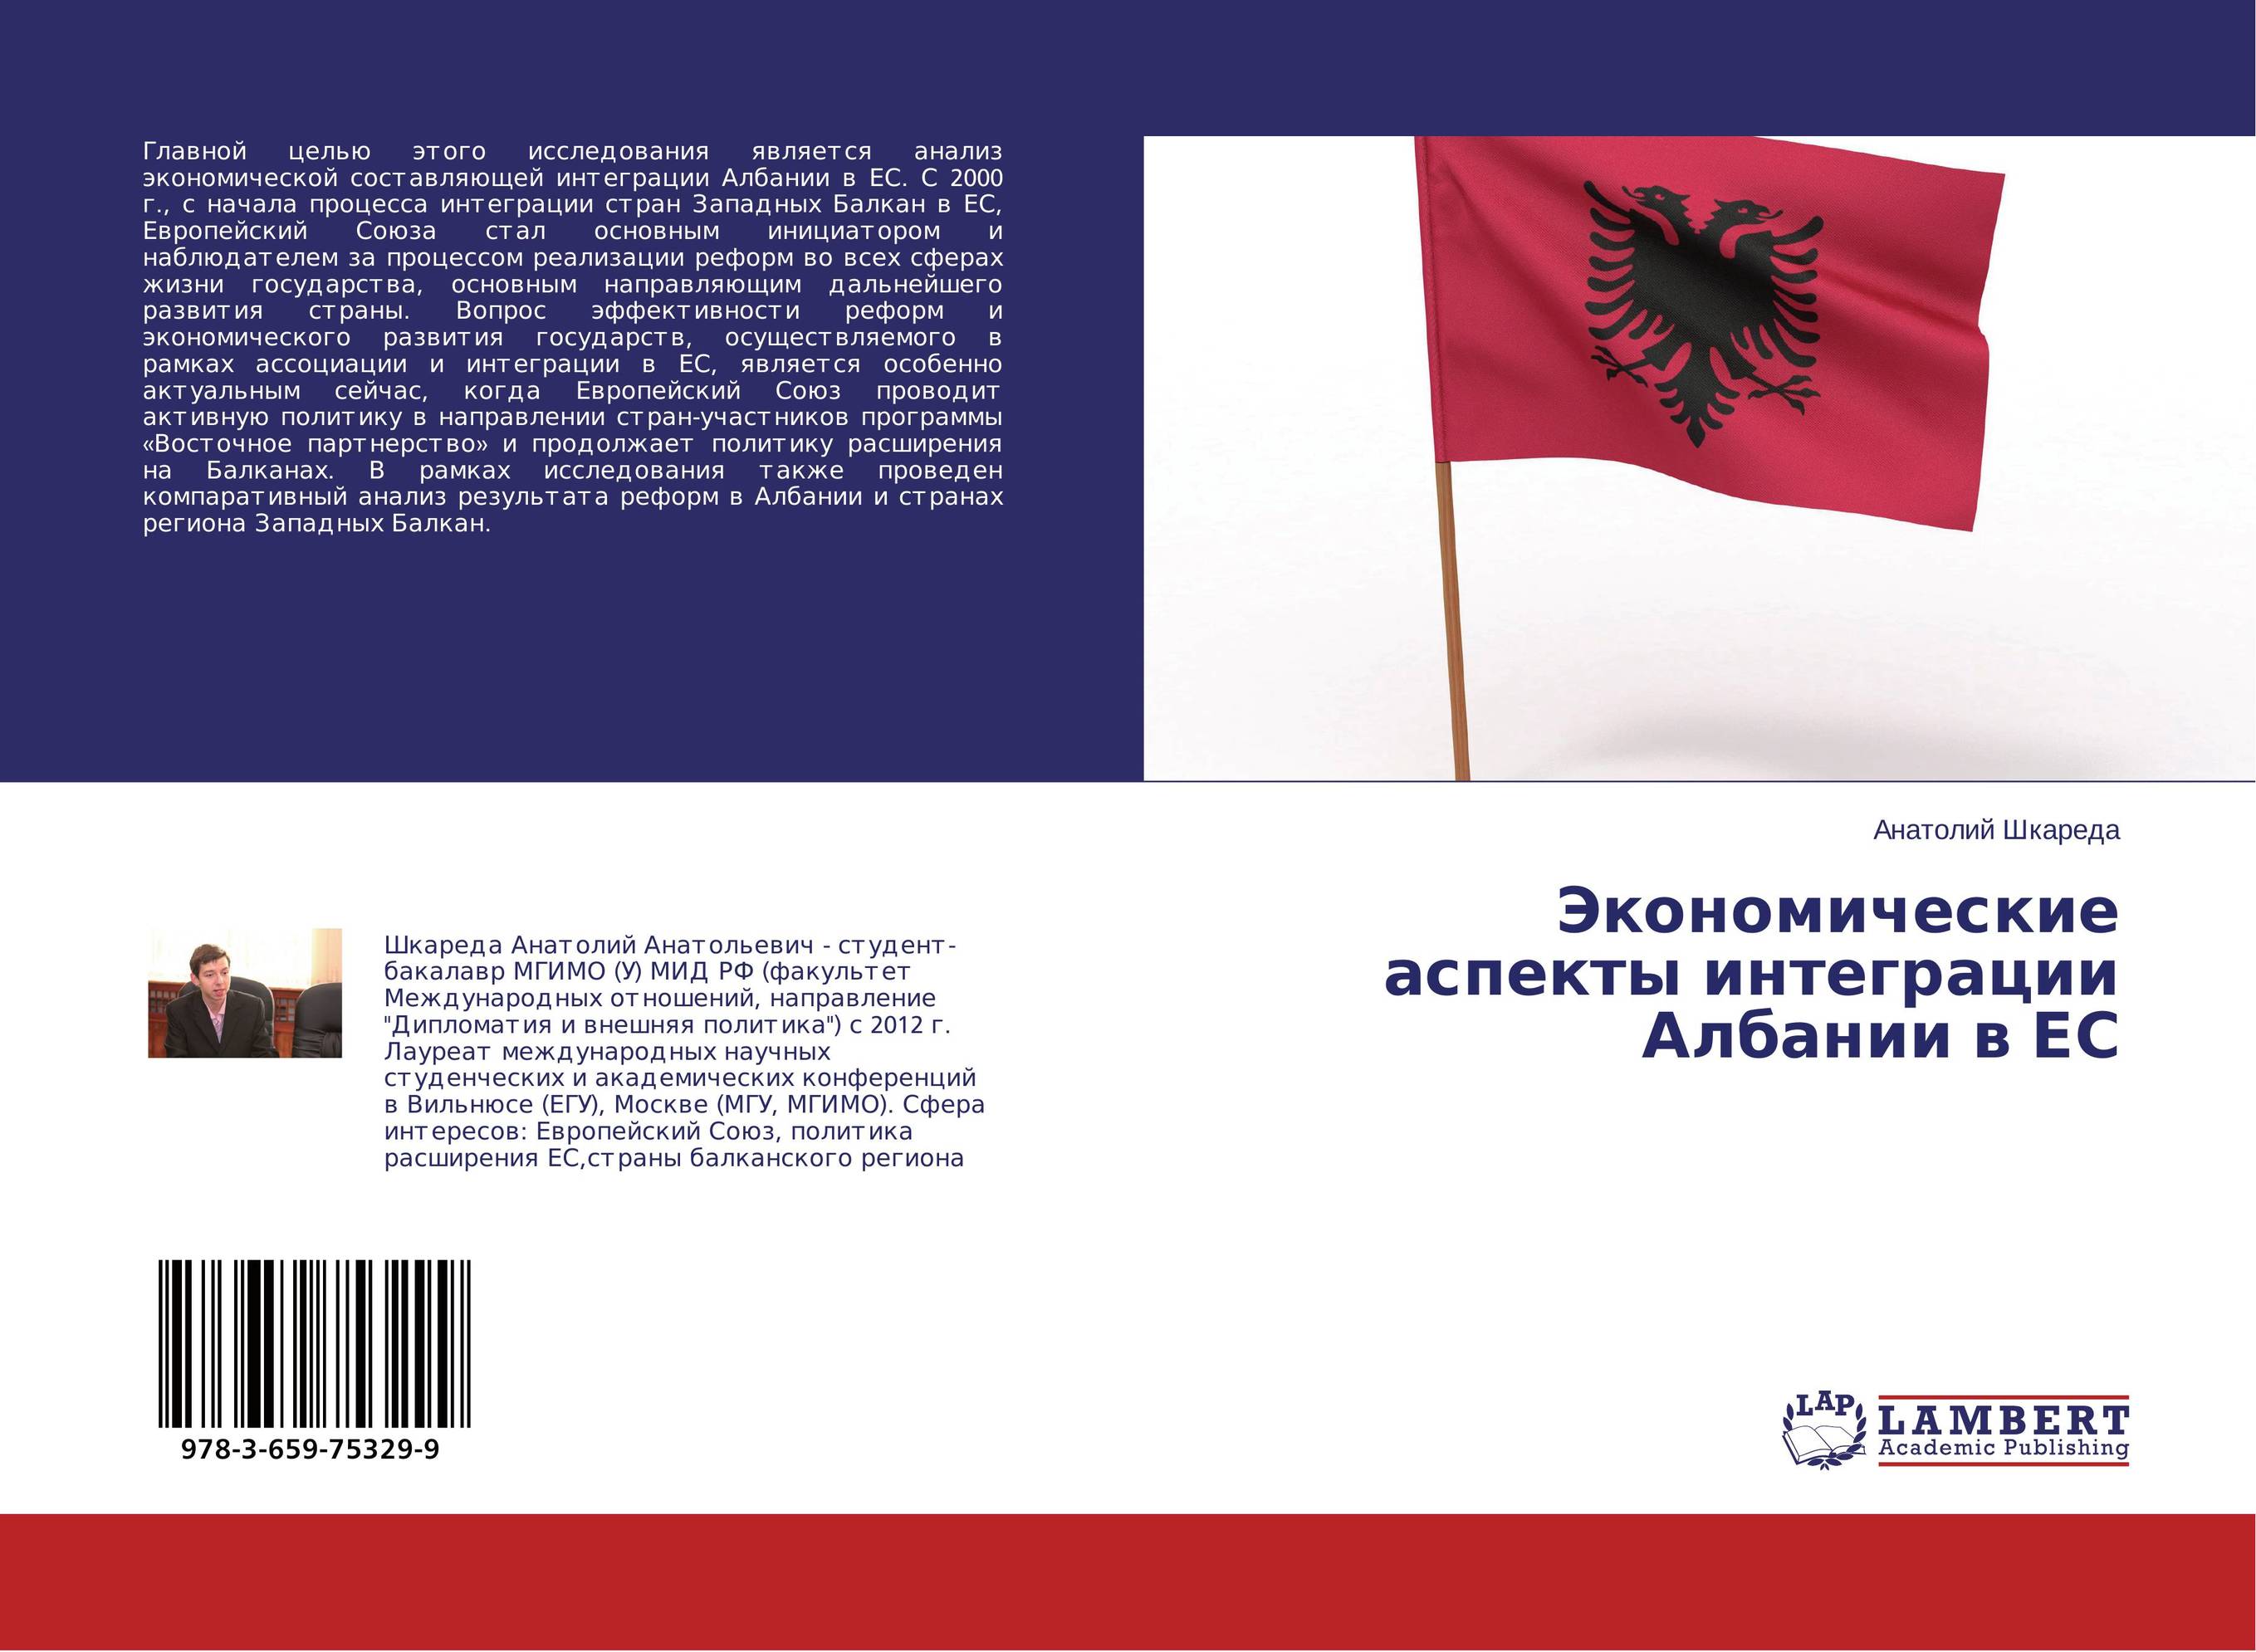 
        Экономические аспекты интеграции Албании в ЕС..
      